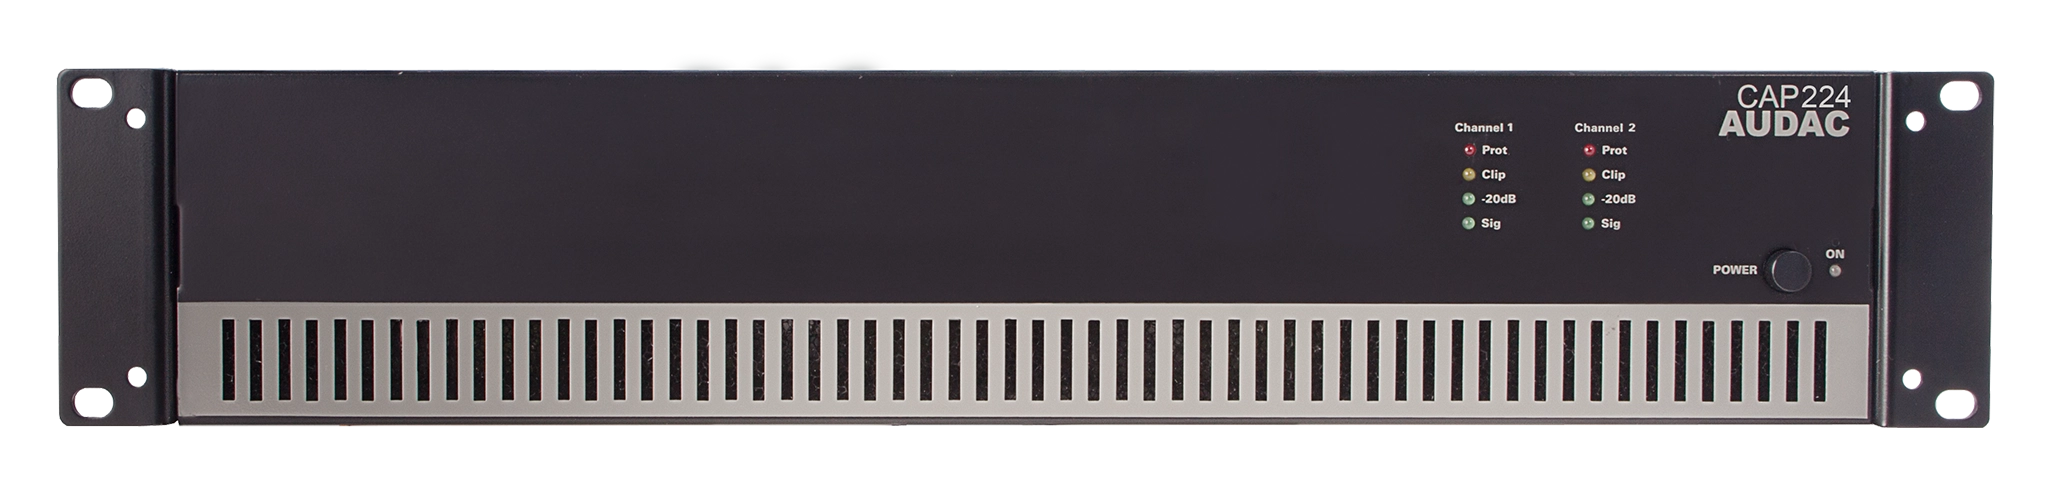 AUDAC CAP224 - 2 x 240W Dual Class-D Power Amplifier, 100V or 4Ω